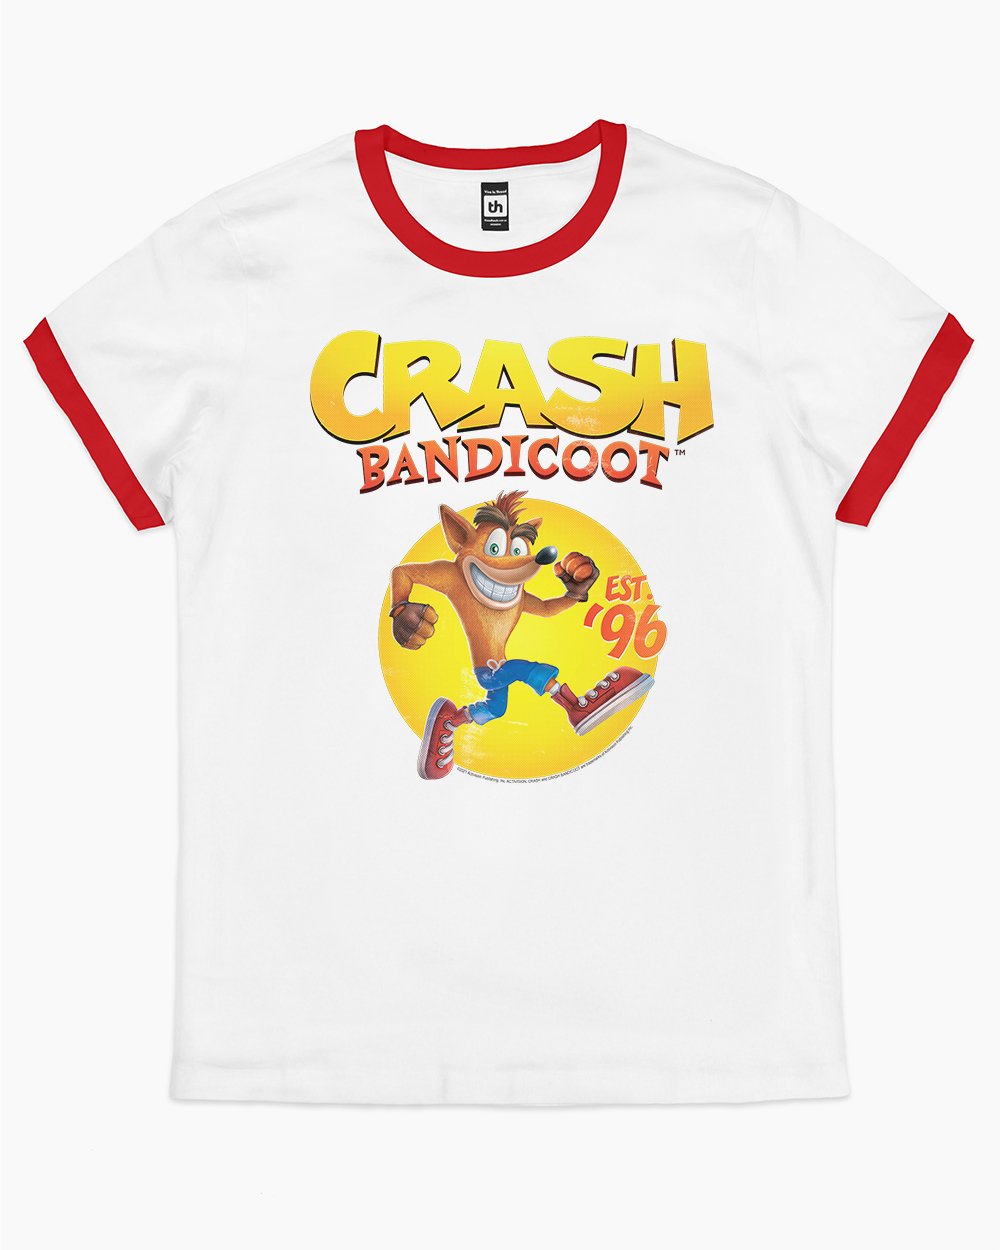 Crash Bandicoot Est 96 T-Shirt Australia Online #colour_red ringer